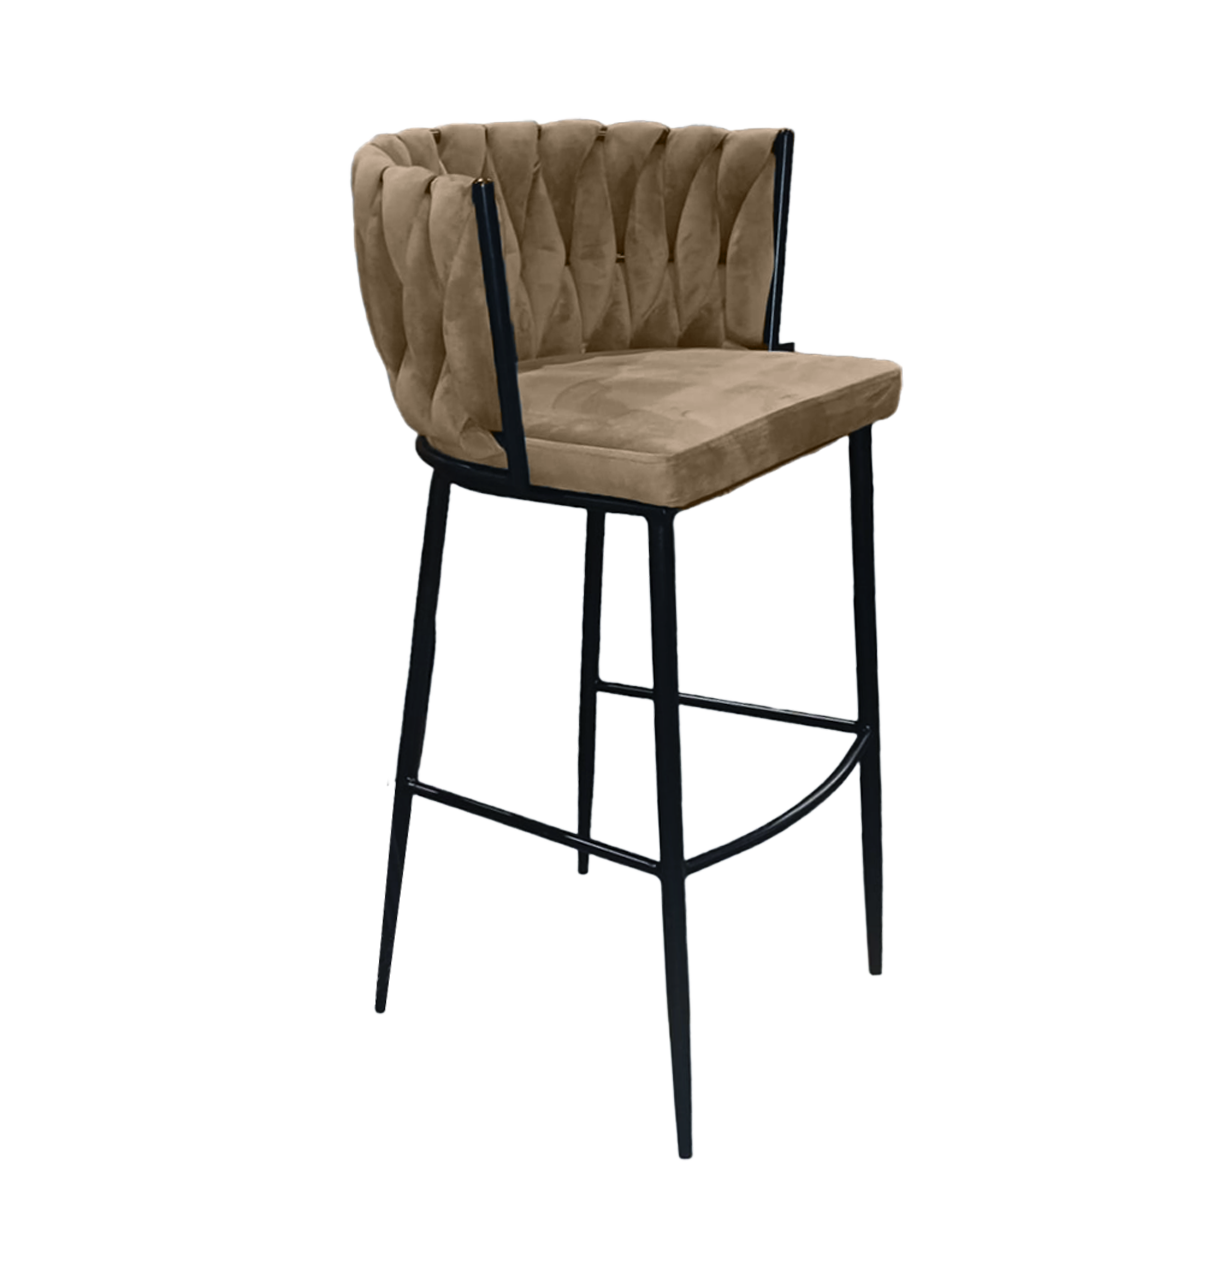 Cosmopolitan Bar Chair - Beige